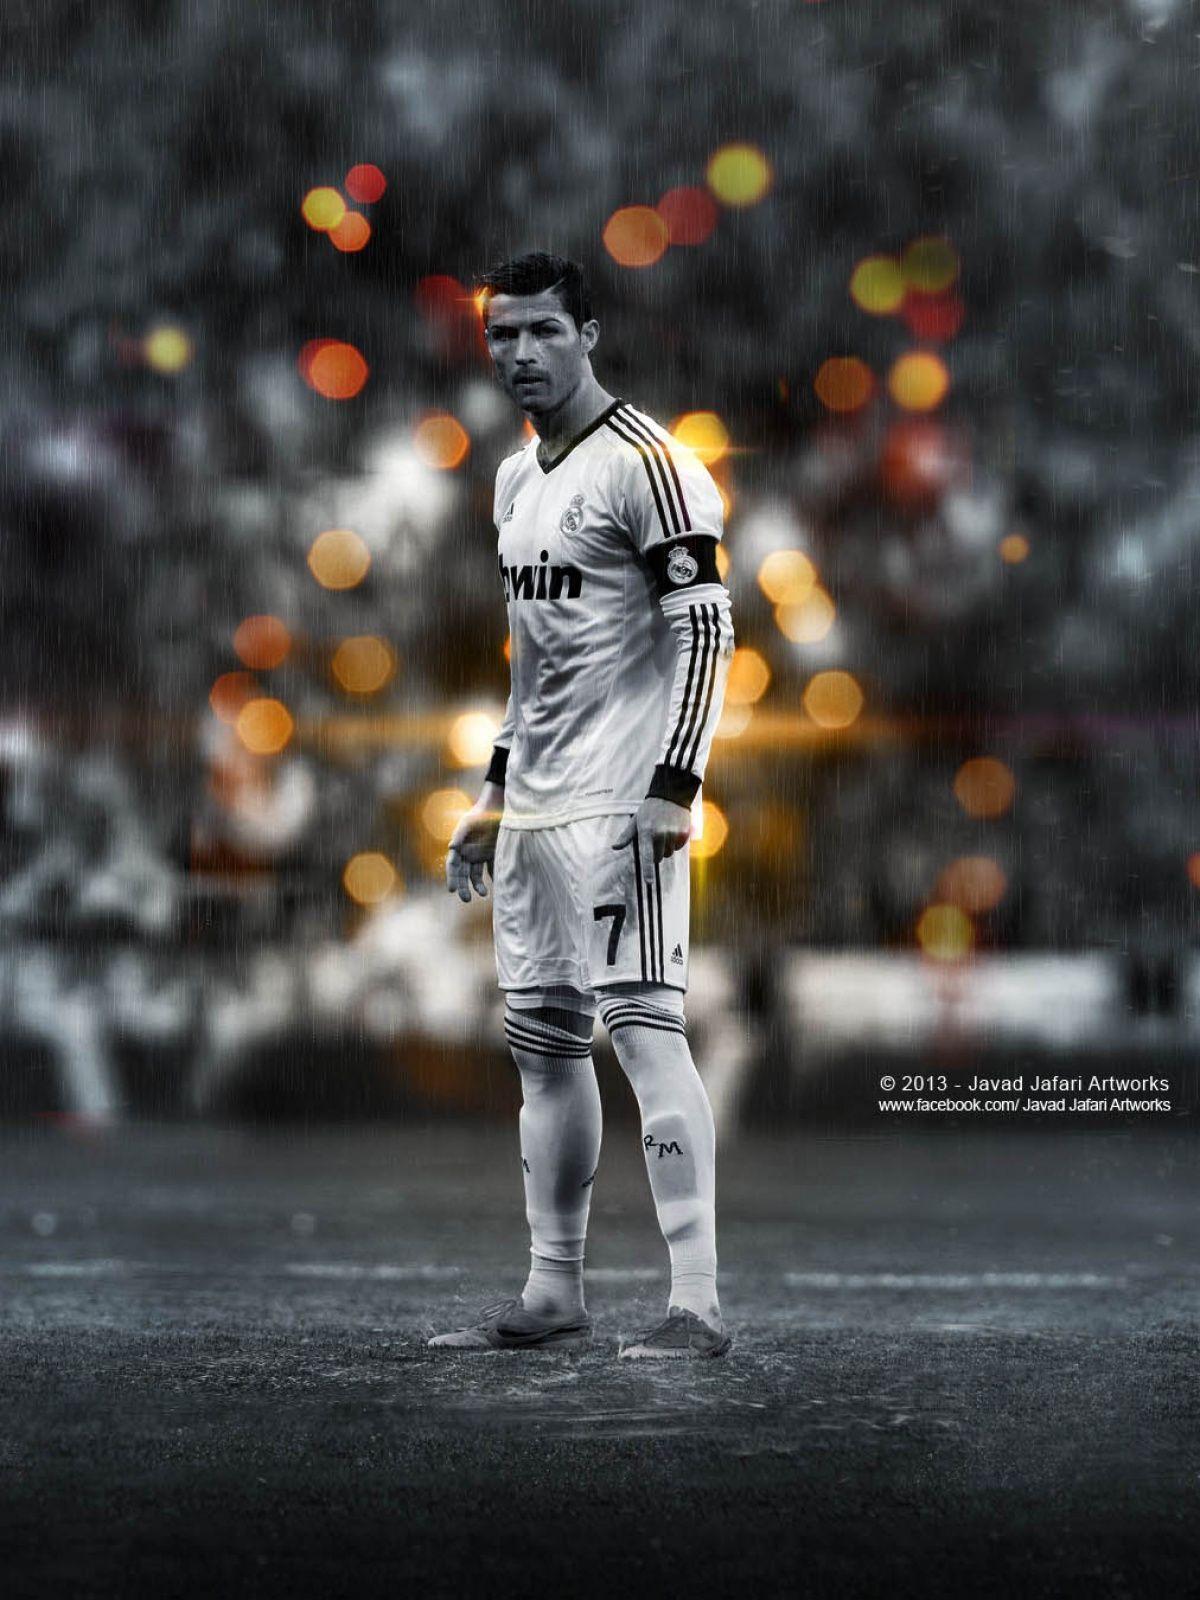 Mobile wallpaper Sports Cristiano Ronaldo Soccer Portuguese 1142575  download the picture for free